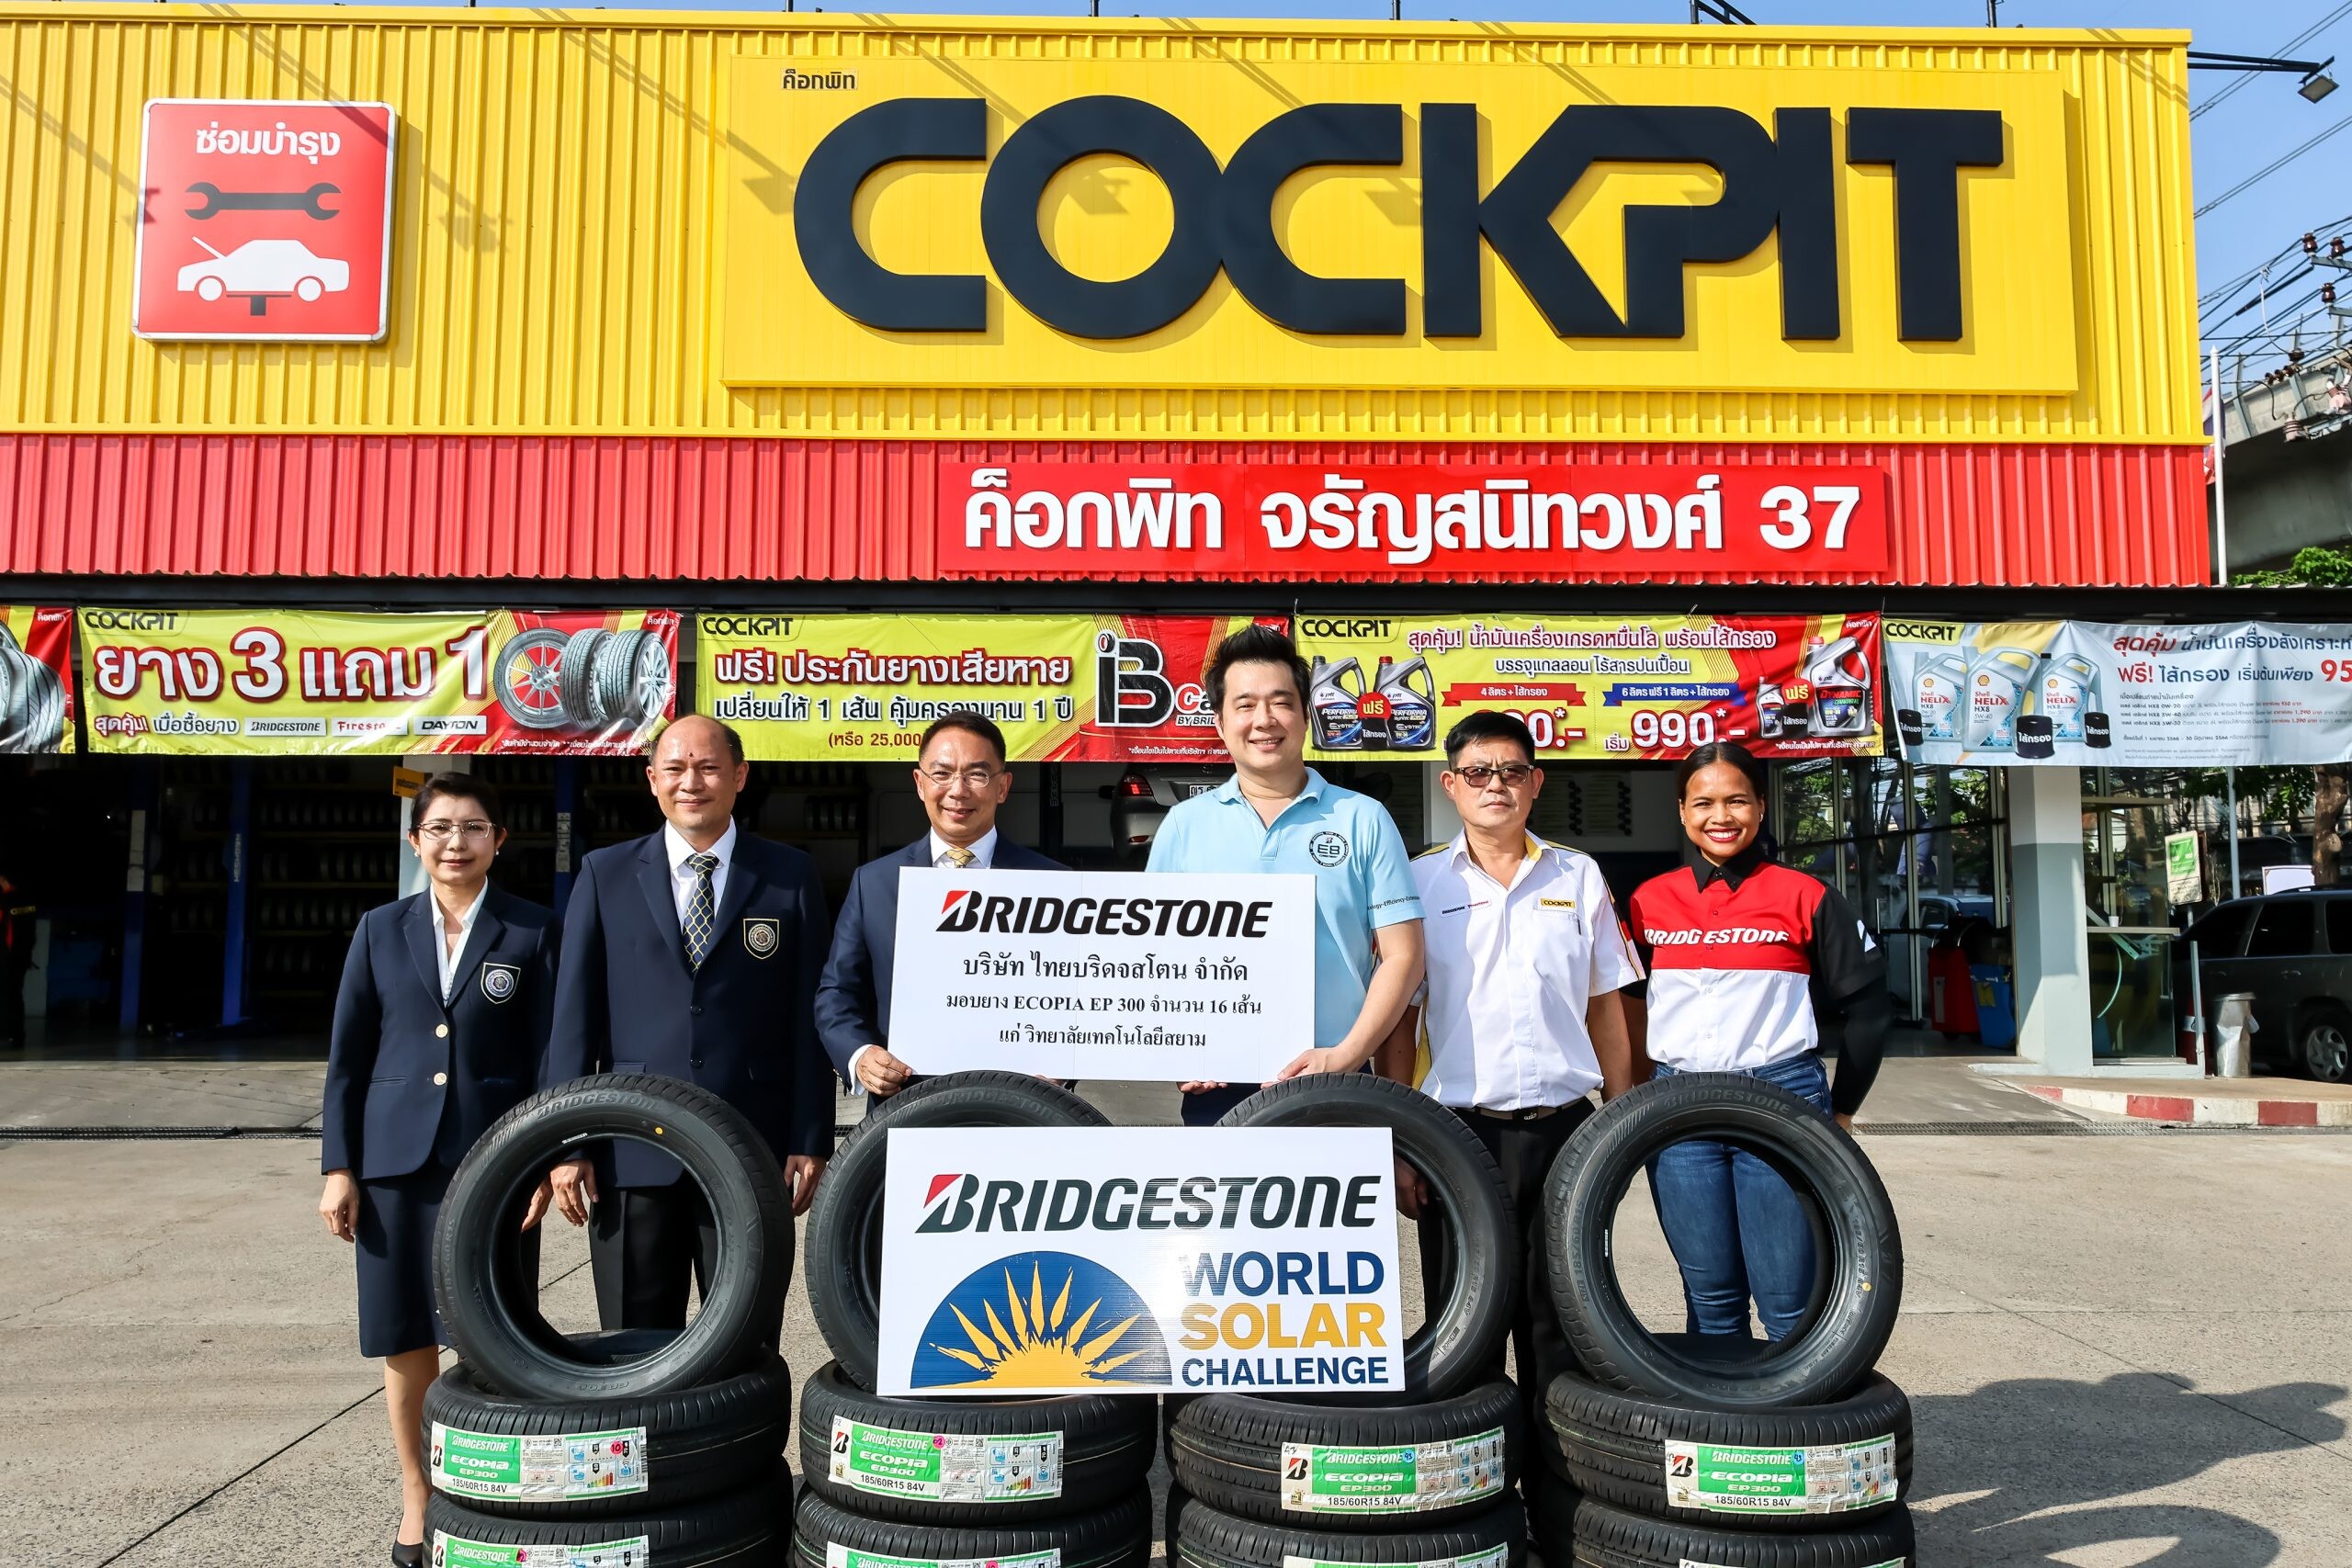 บริดจสโตนปลุกพลังนักศึกษาไทย แสดงศักยภาพสู่เวทีการแข่งขันสุดท้าทายระดับโลก ในรายการ "2023 Bridgestone World Solar Challenge"